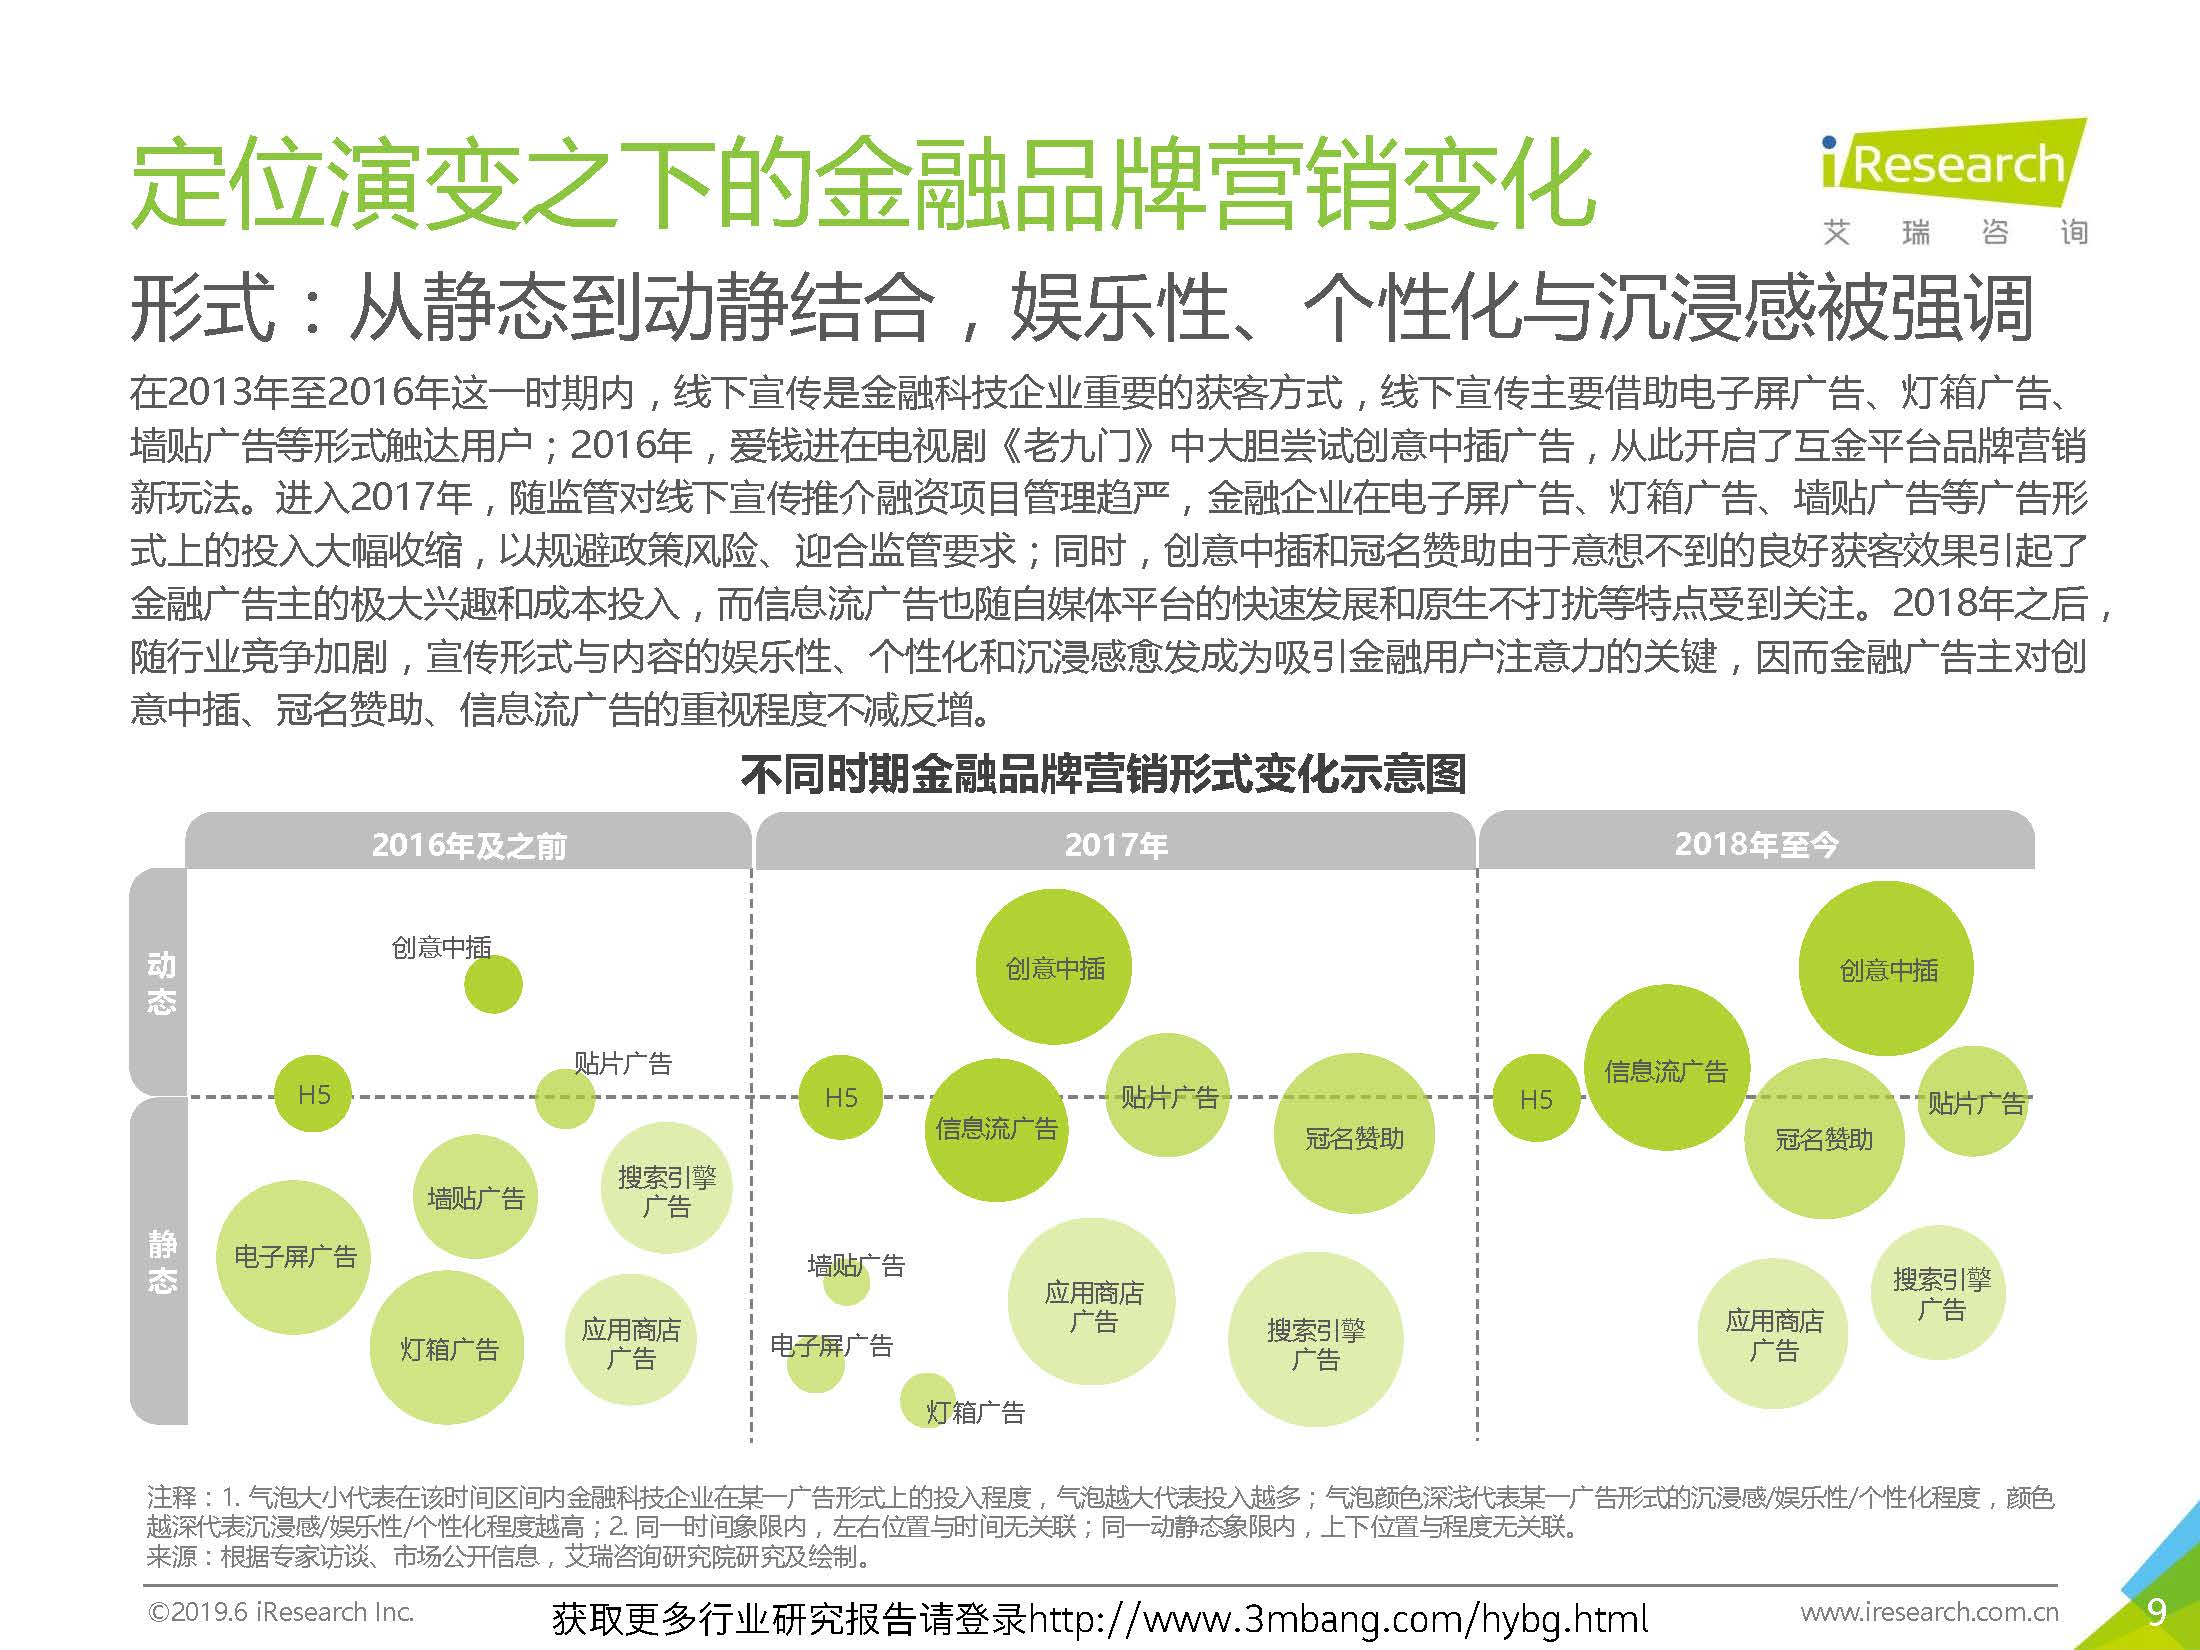 艾瑞：2019年-静待惊蛰-中国金融科技企业品牌营销研究报告(37页)_页面_09.jpg